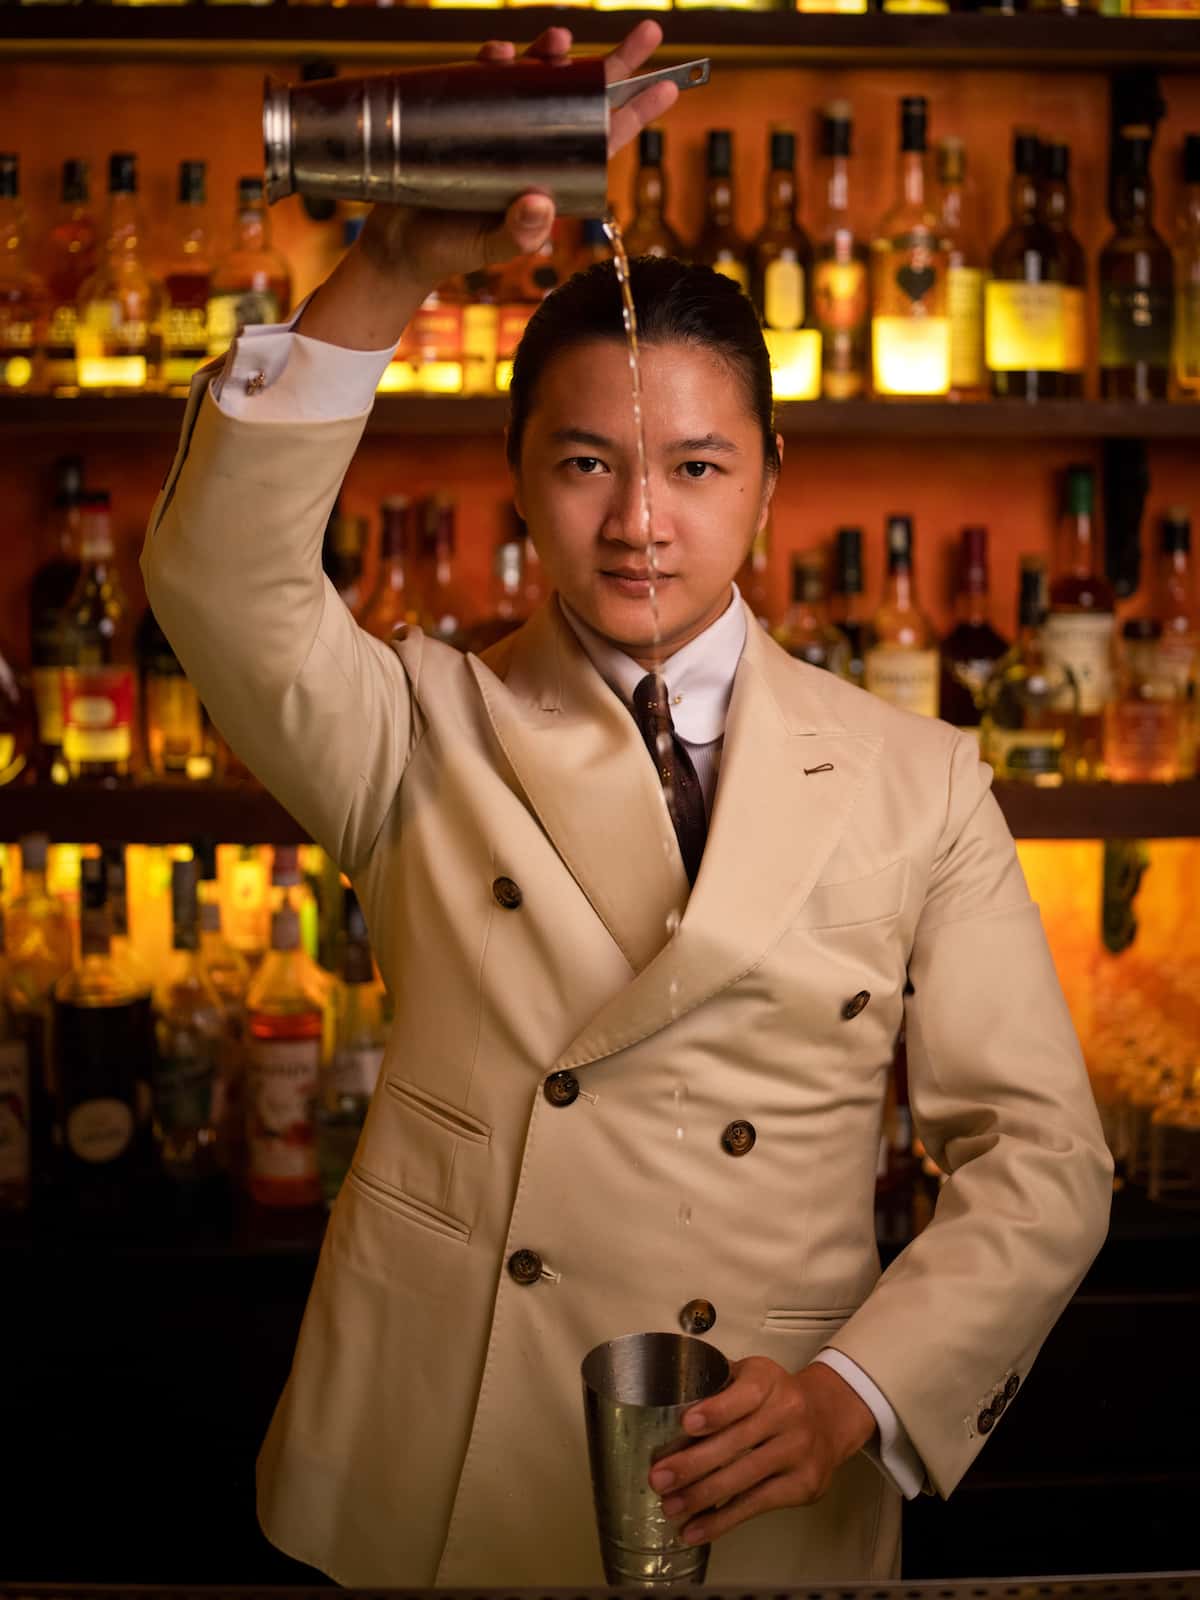 PK Maltroom's head bartender Pham Duy Nhut.